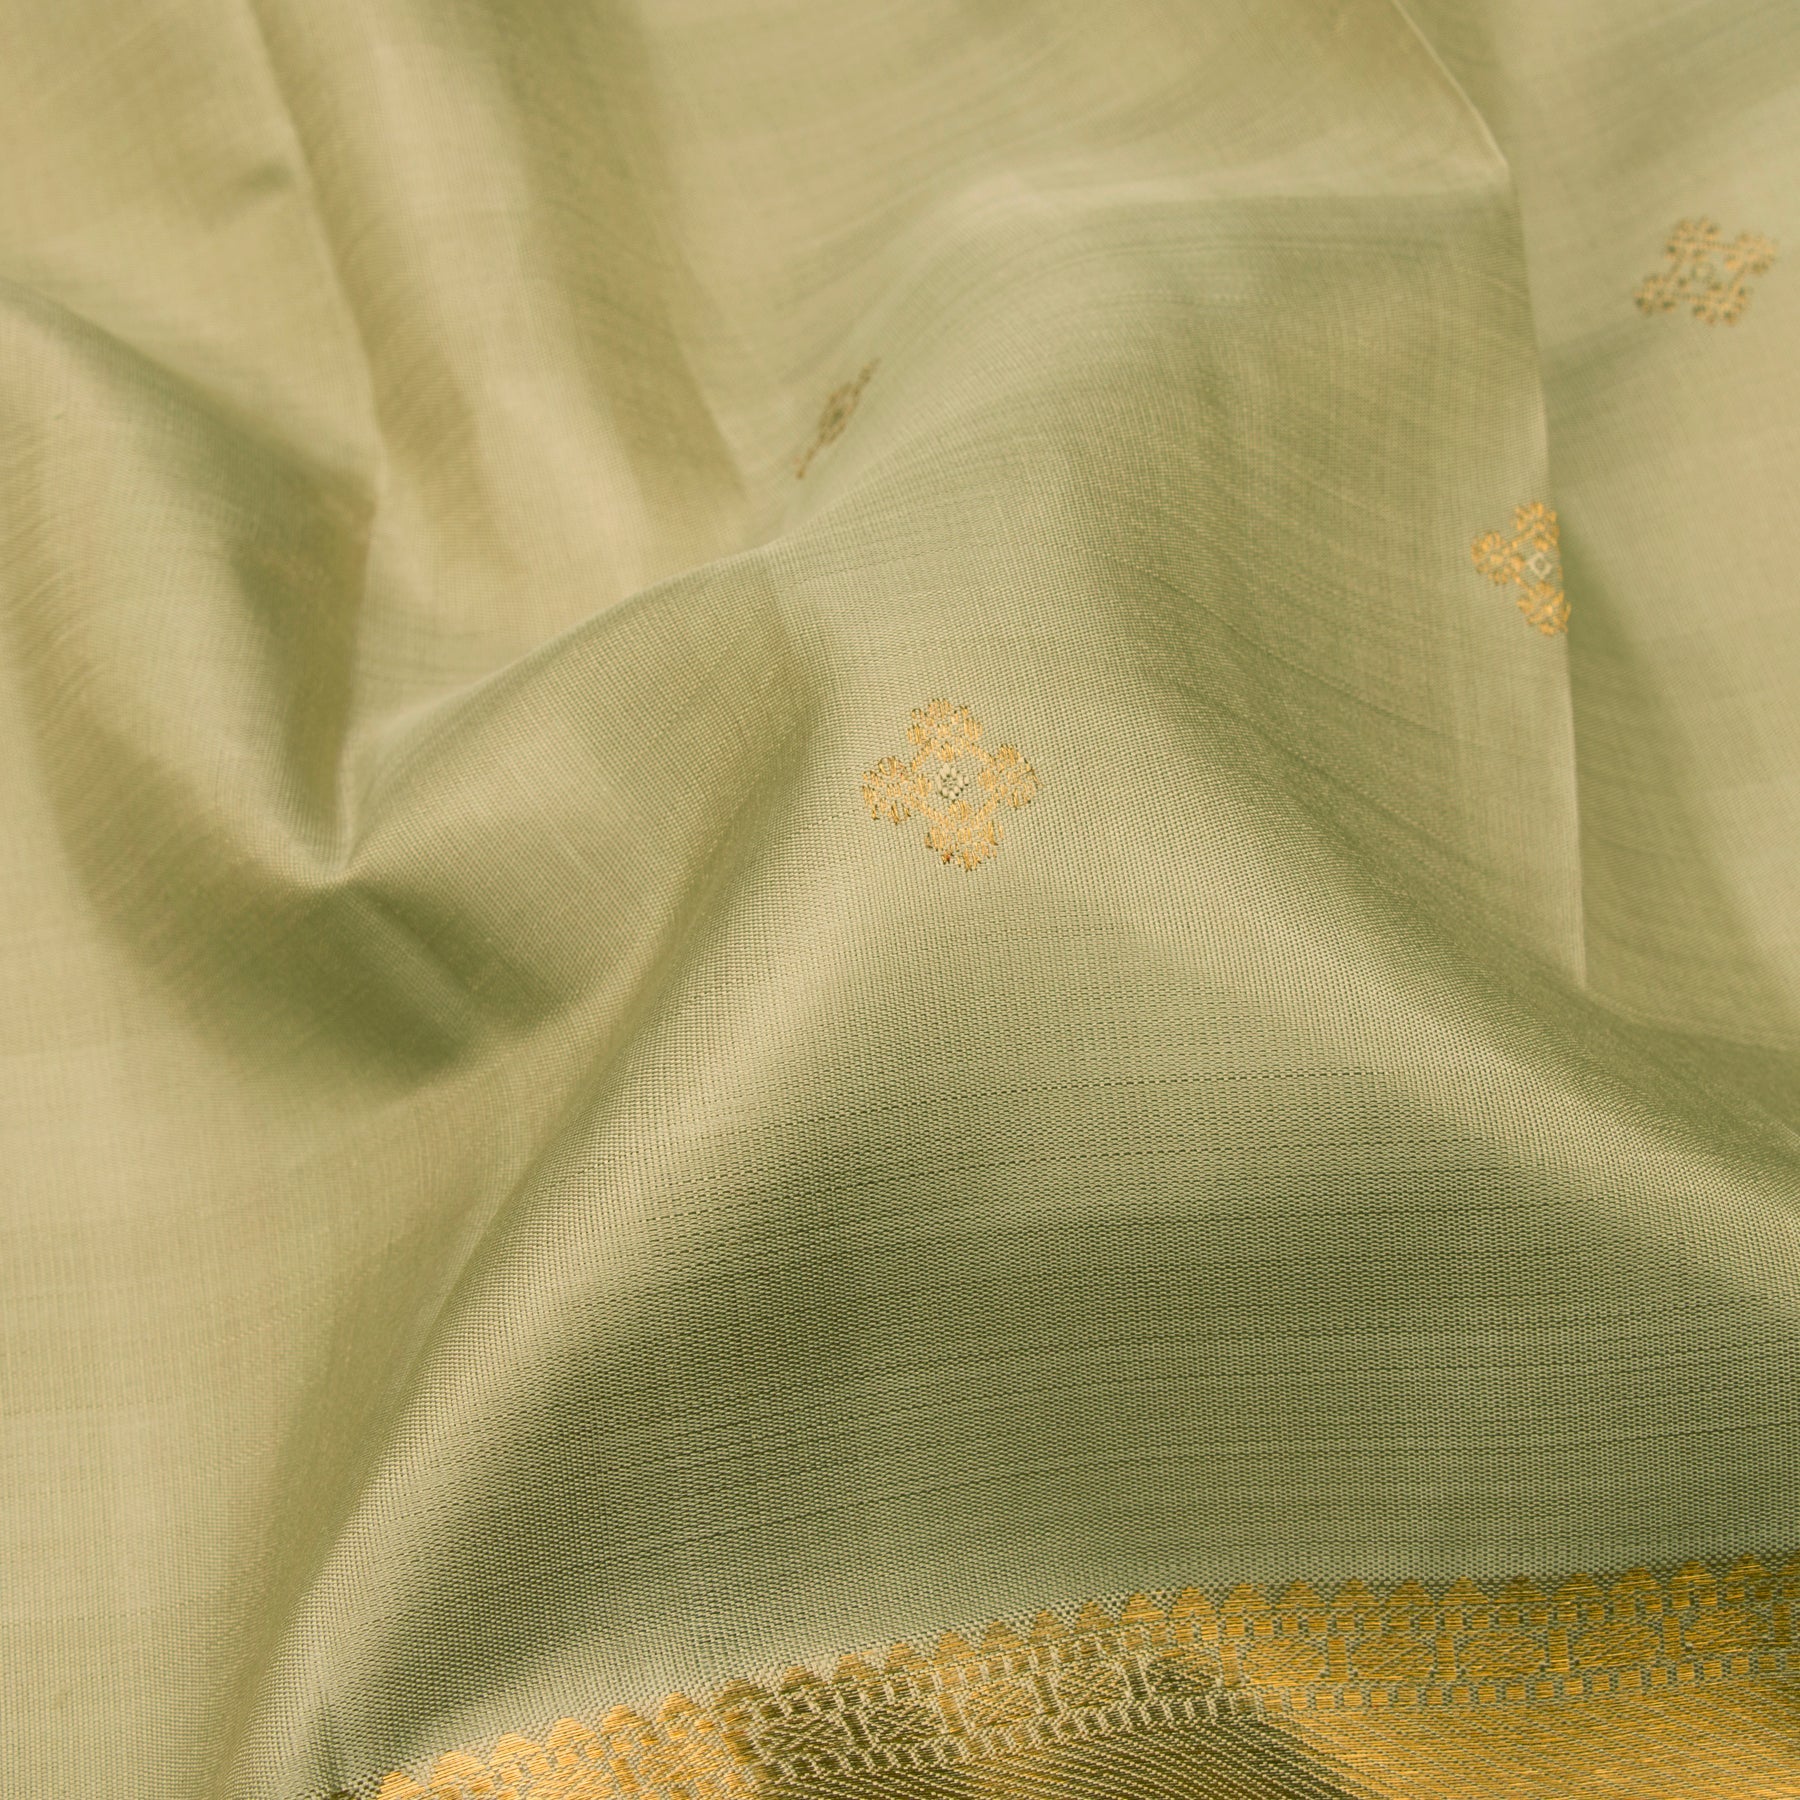 Kanakavalli Kanjivaram Silk Sari 23-611-HS001-09170 - Fabric View